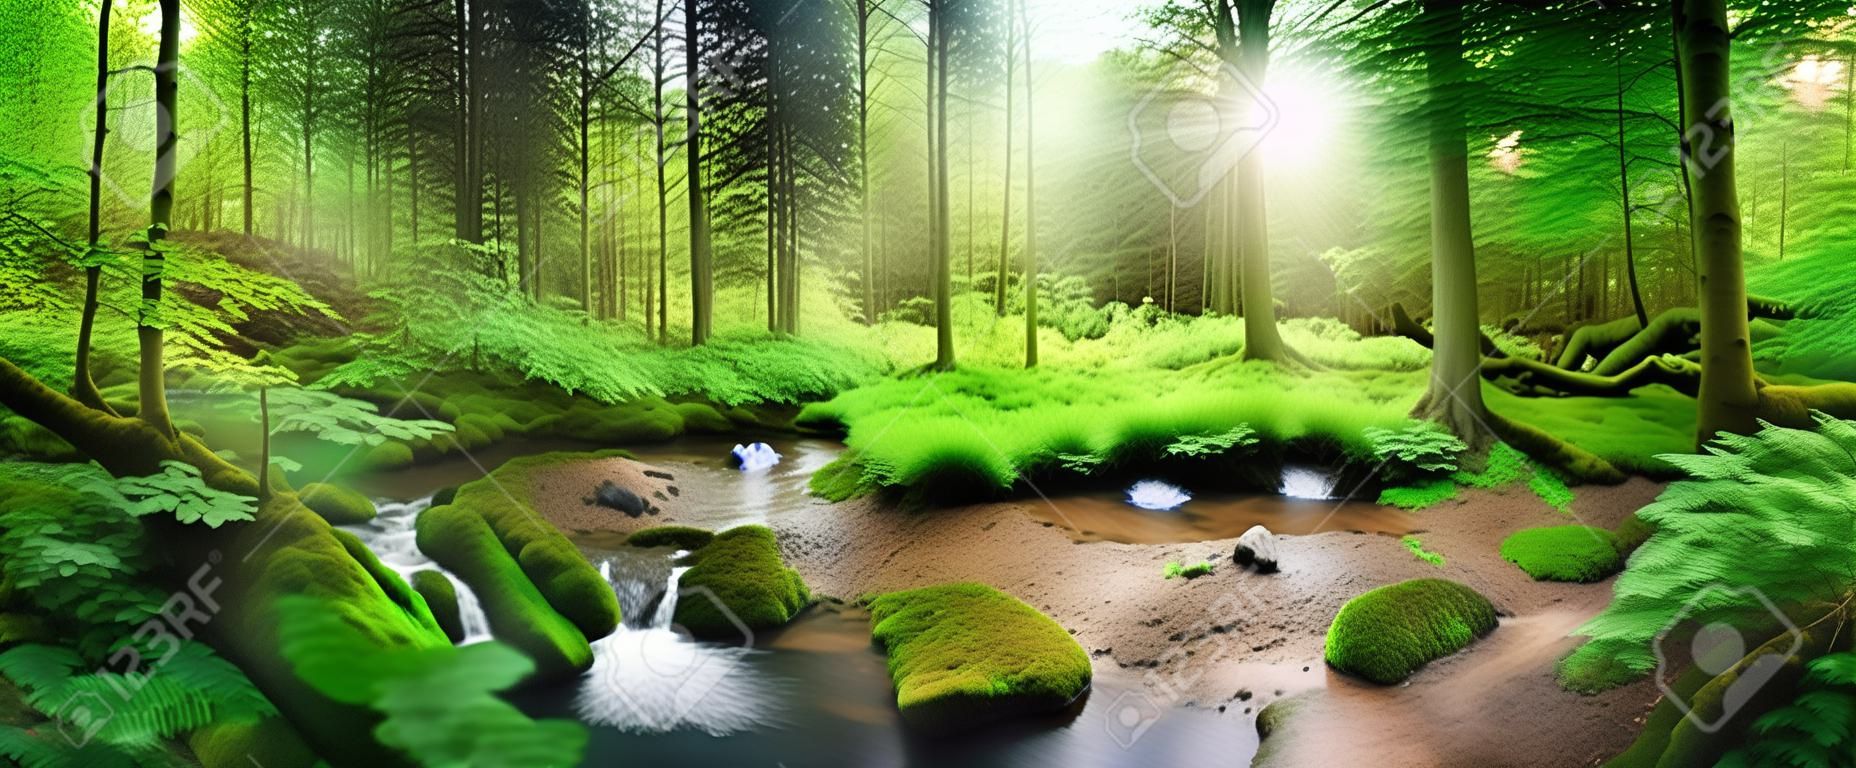 Encantador cenário de floresta panorâmica com luz suave caindo através da folhagem, um riacho com água tranquila e uma garça